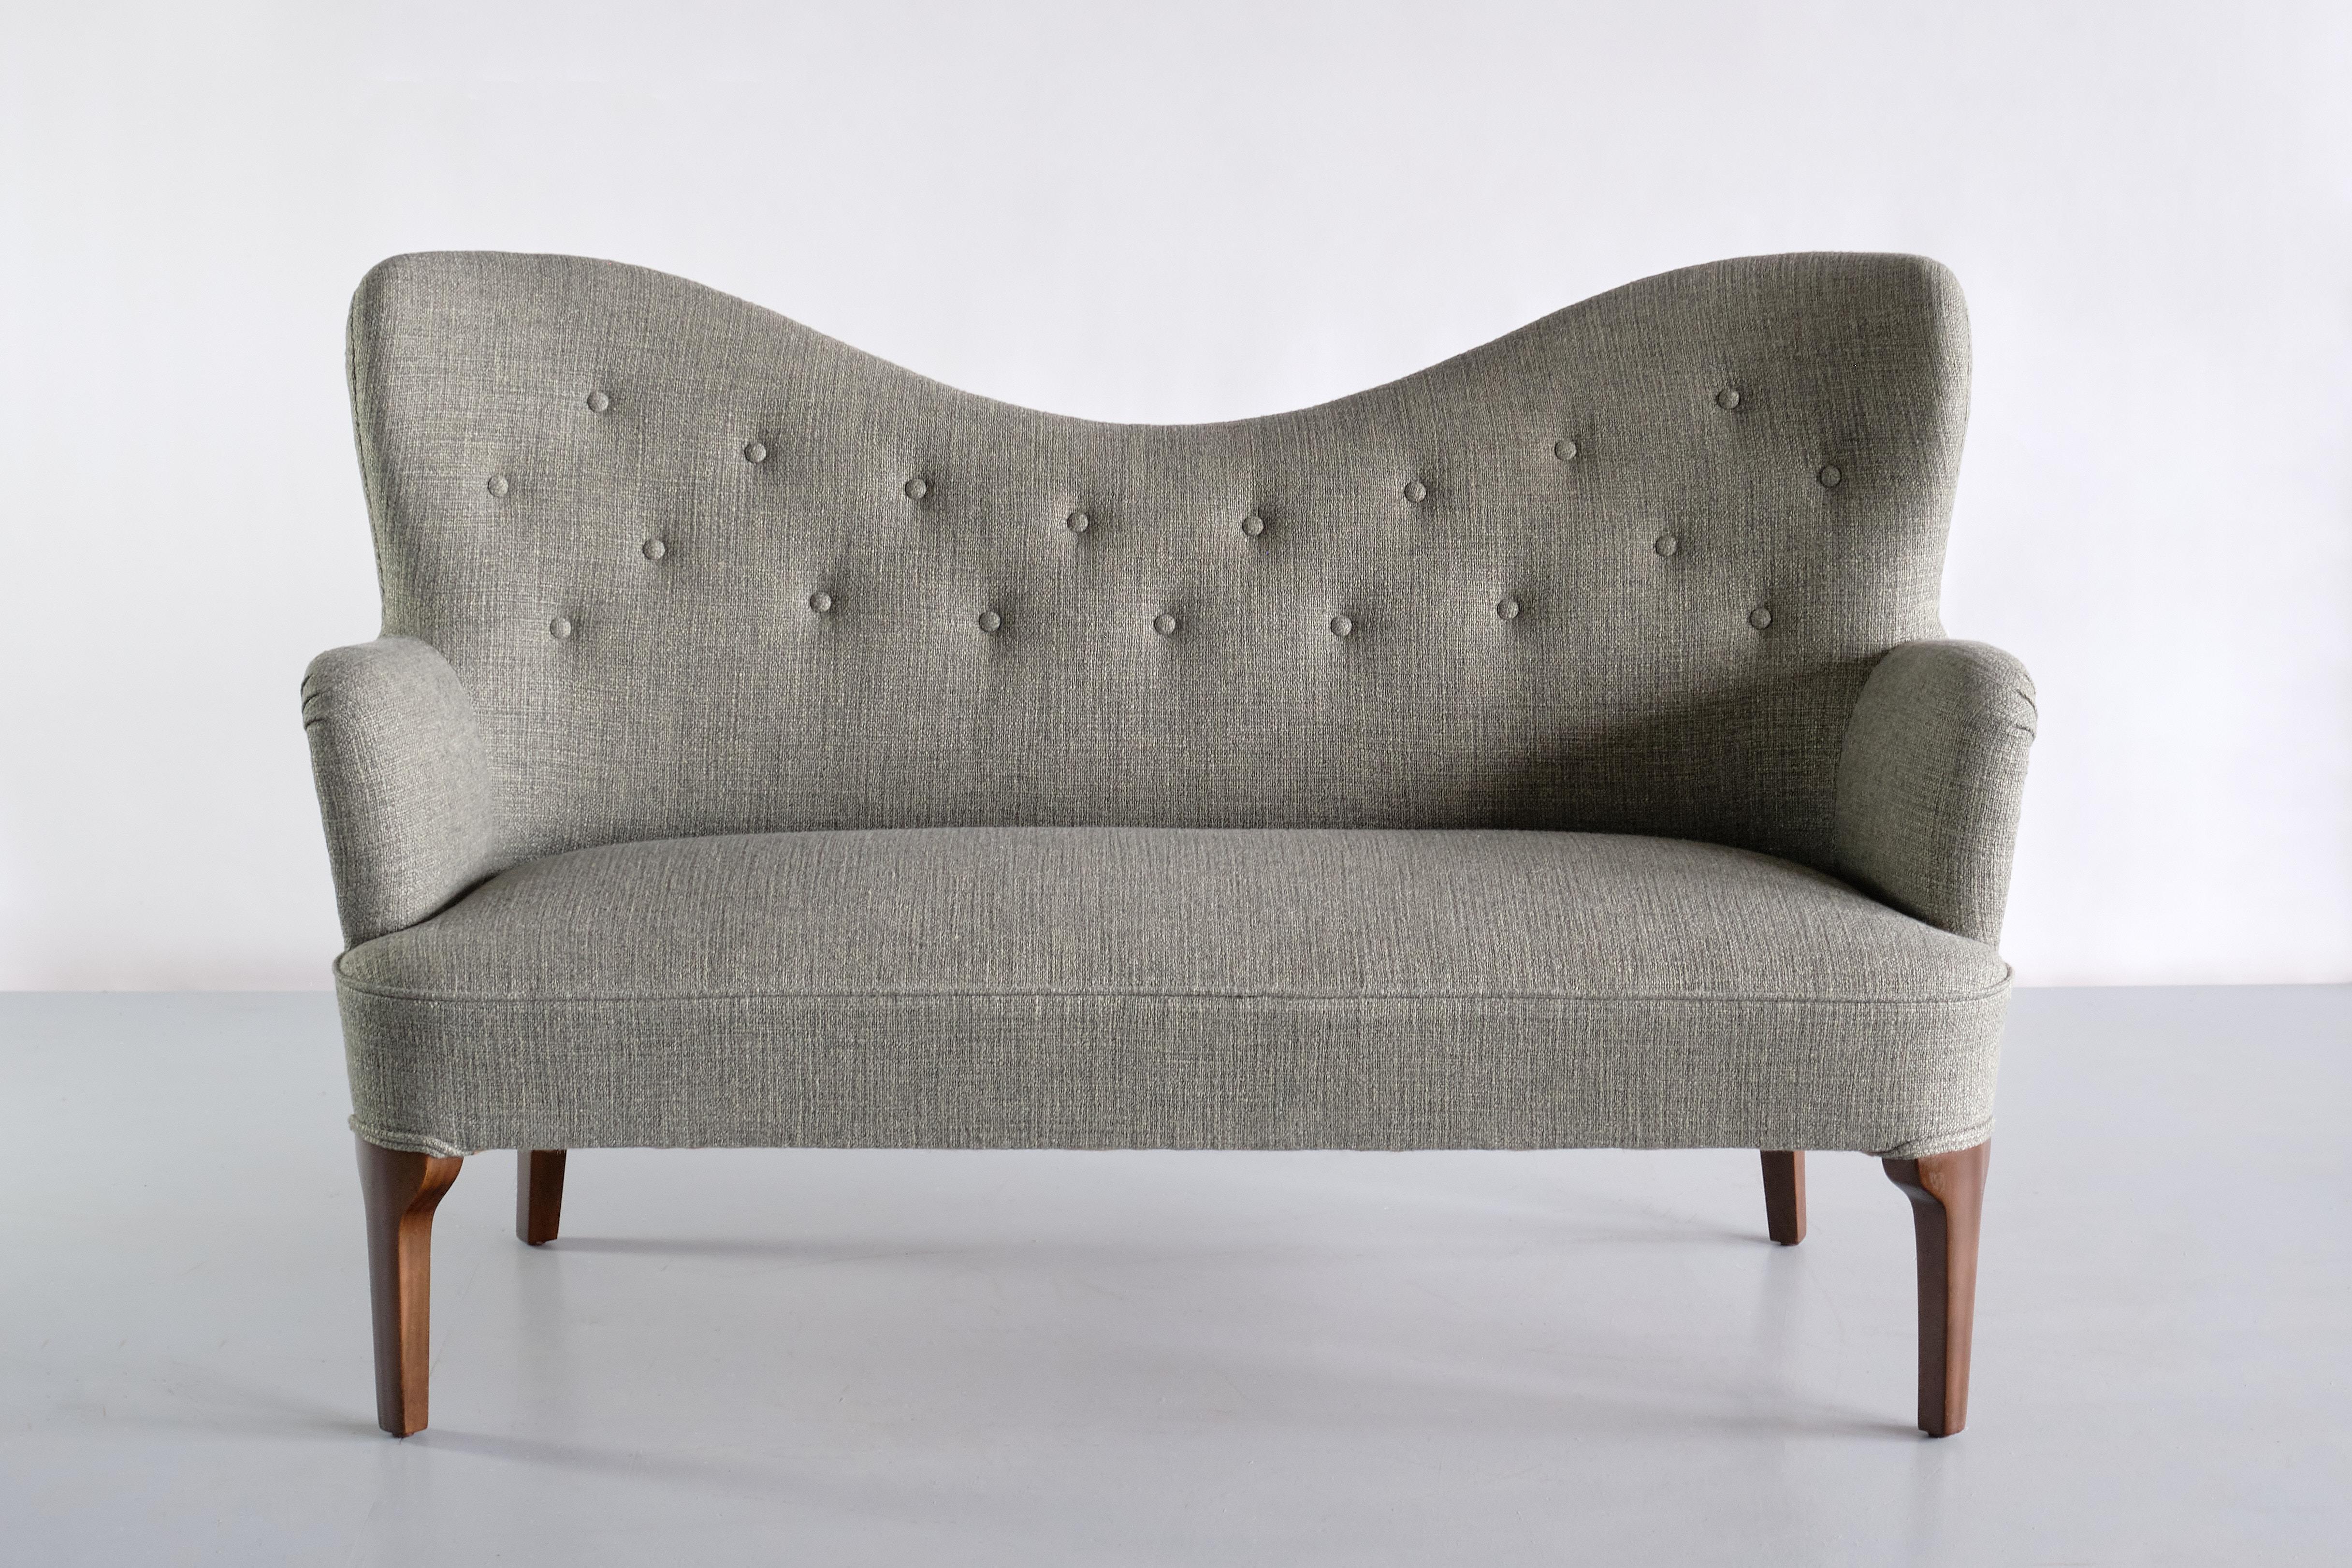 Ce canapé deux places exceptionnellement rare a été conçu par Ernst Kühn pour le restaurant Wivex à Copenhague au début des années 1930. La conception personnalisée a très probablement été réalisée par la société danoise Normina A/S, le fabricant